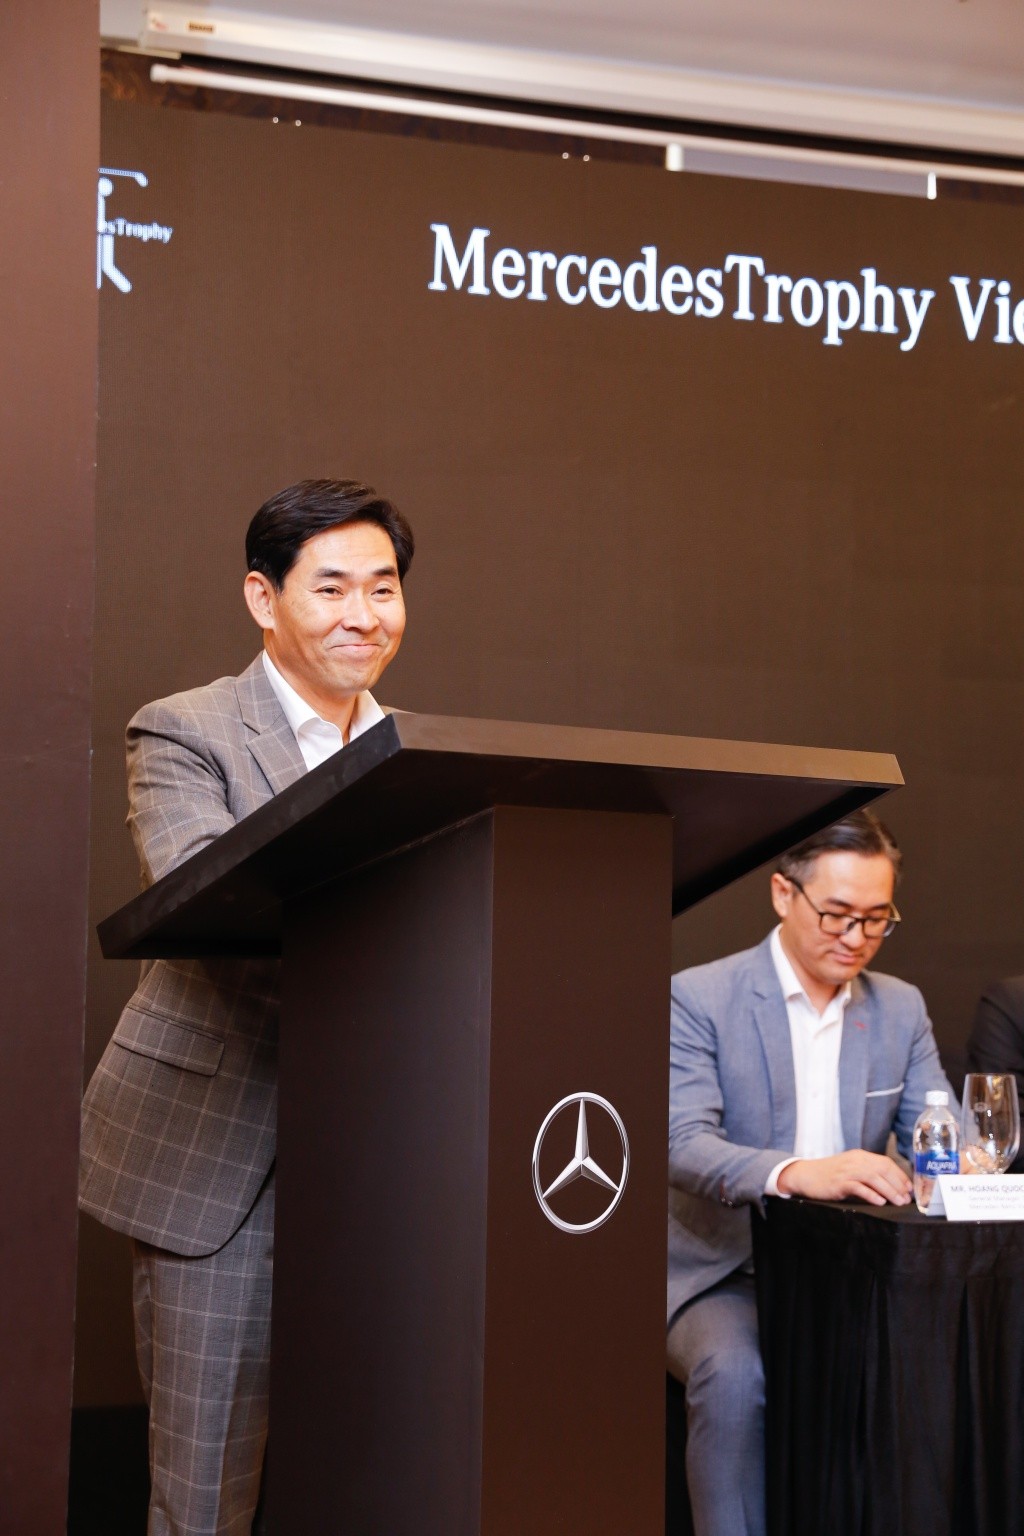 Vòng Chung kết giải Golf MercedesTrophy Việt Nam 2019, tổng giải thưởng gần 30 tỷ đồng ảnh 5